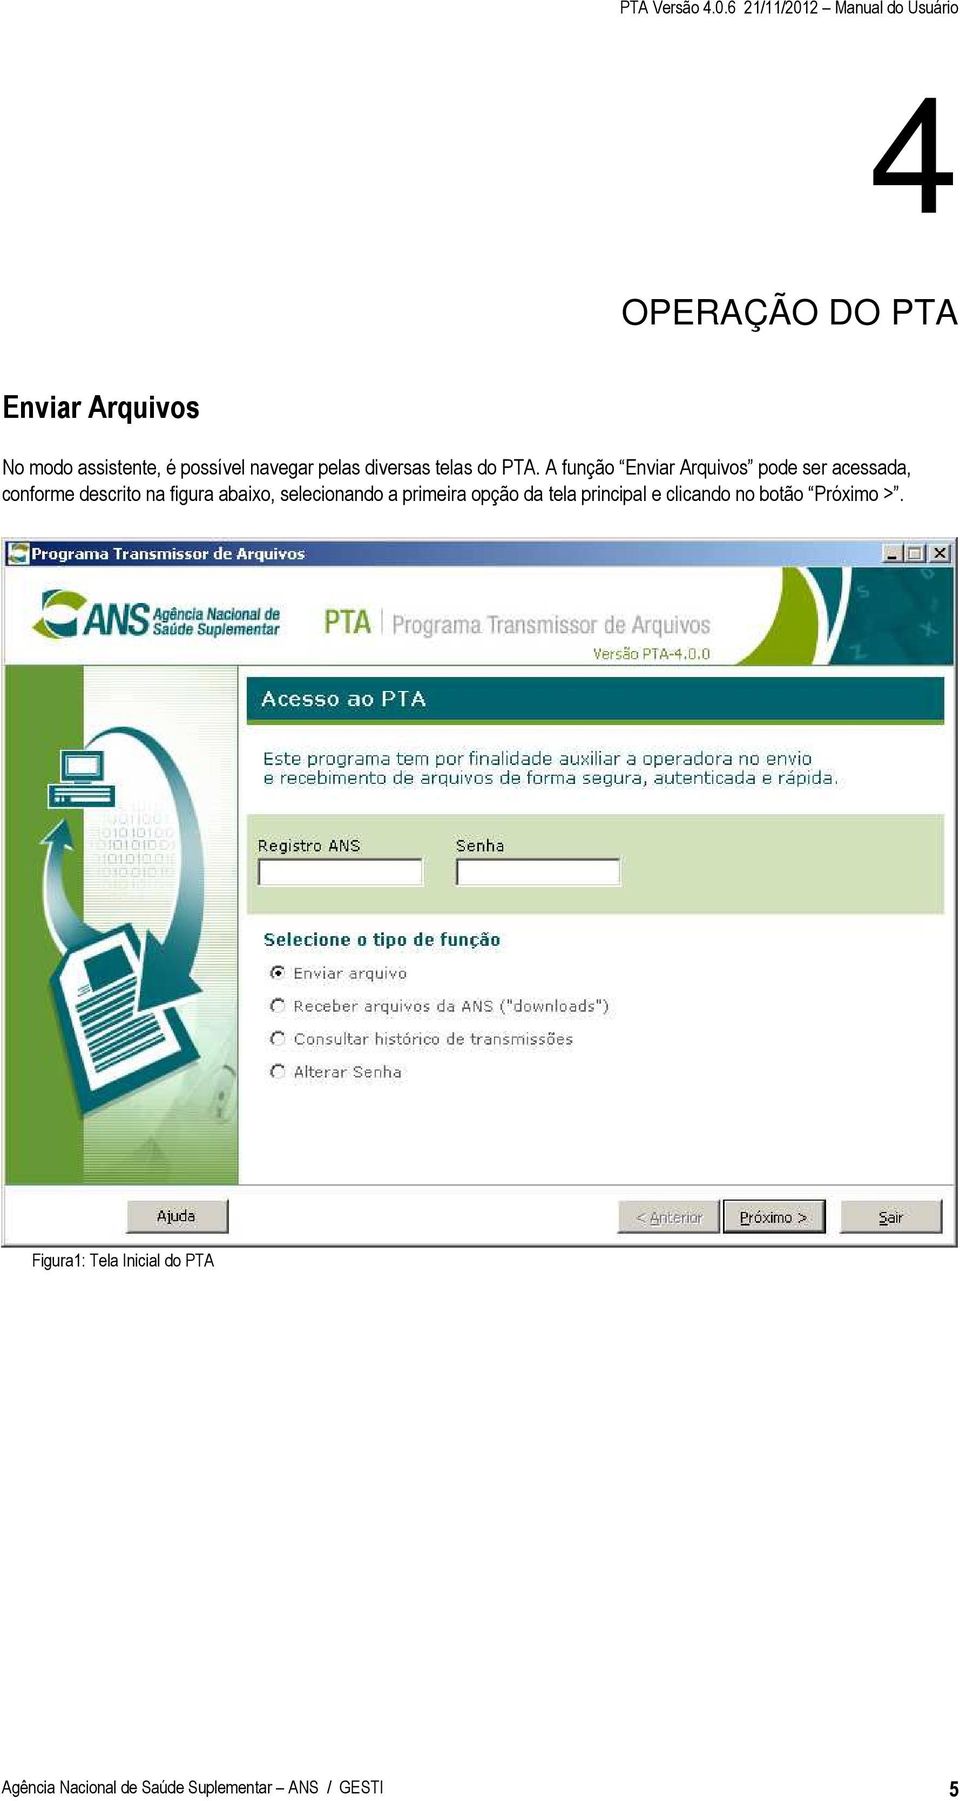 Ao acessar qualquer opção do PTA você já deve estar conectado à internet.